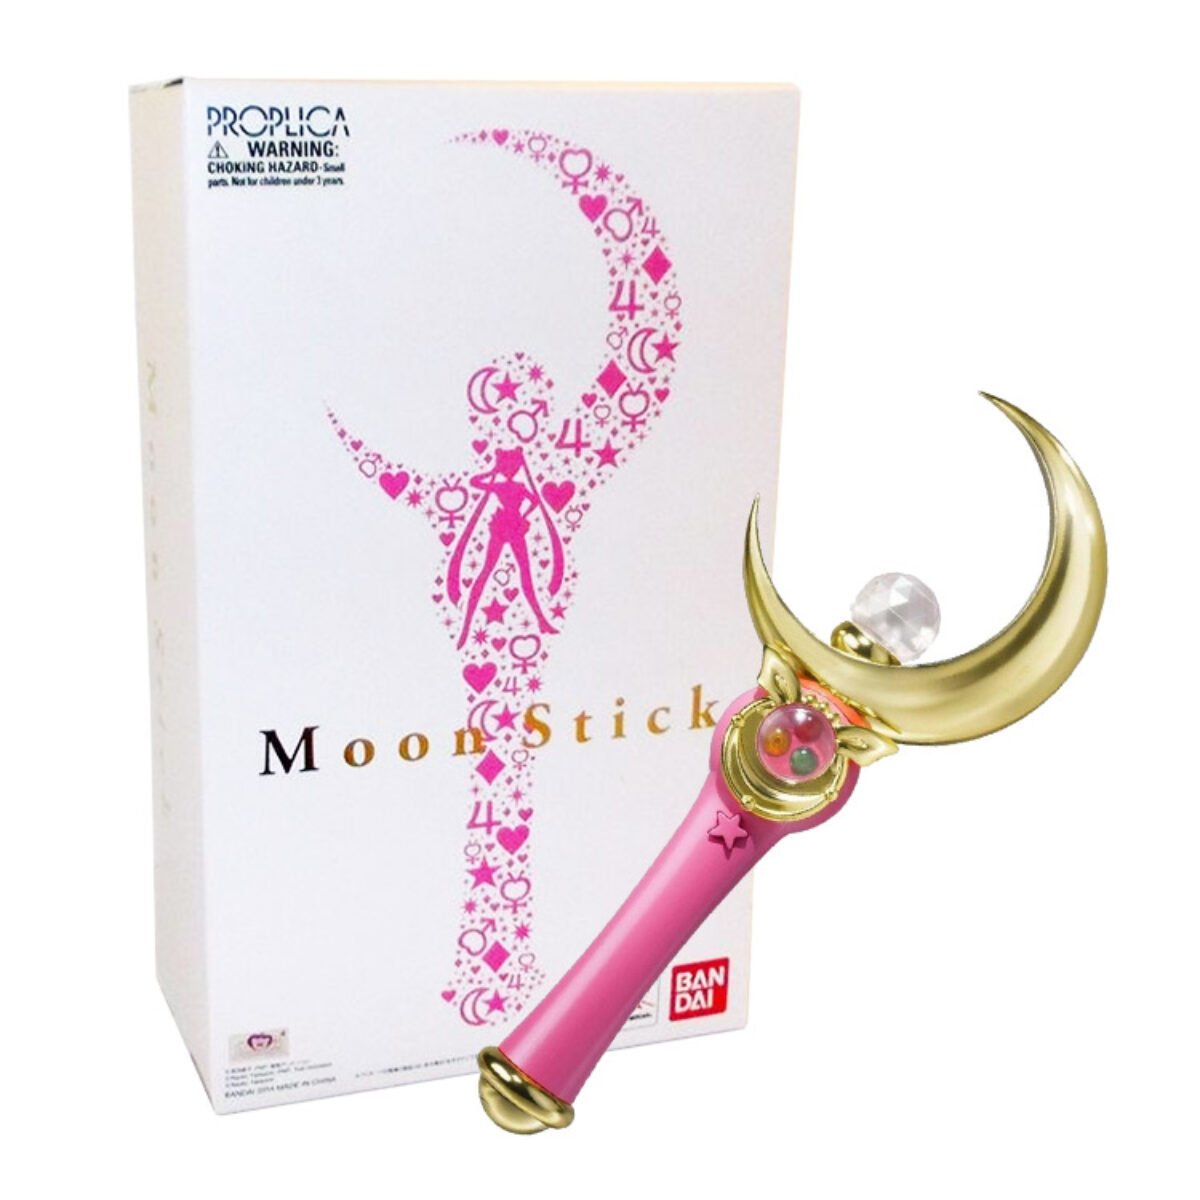  Bandai Tamashii Nations Proplica Moon Stick Sailor Moon :  Toys & Games